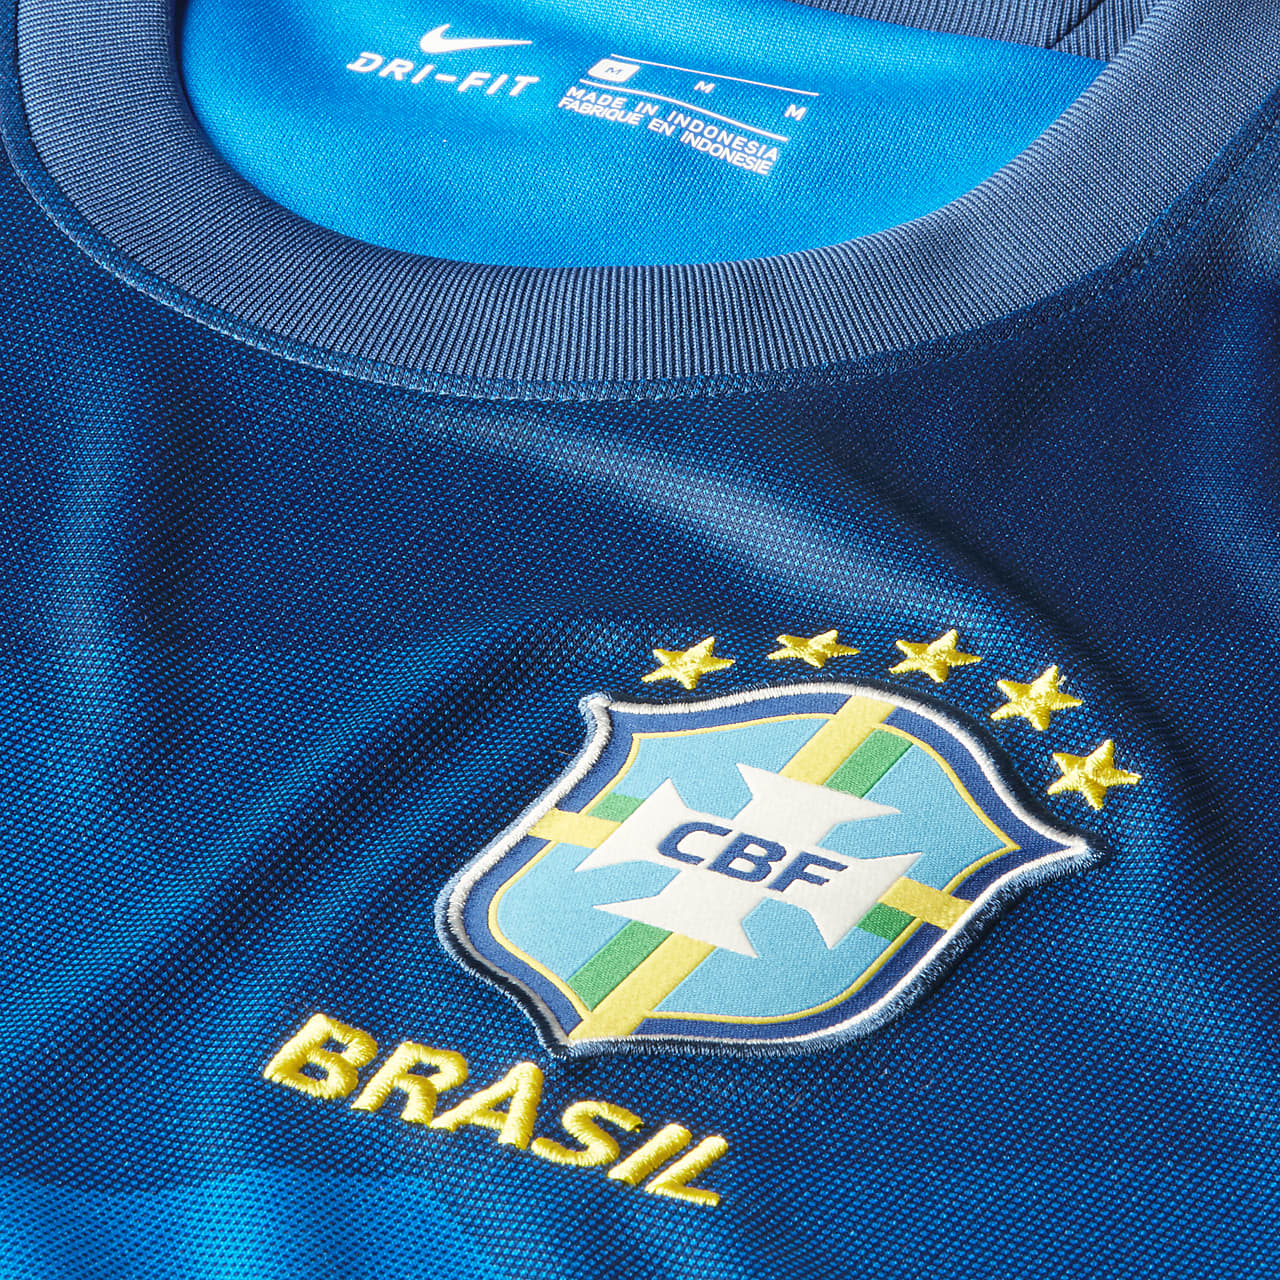 Nike公式 ブラジル スタジアム アウェイ メンズ サッカーユニフォーム オンラインストア 通販サイト